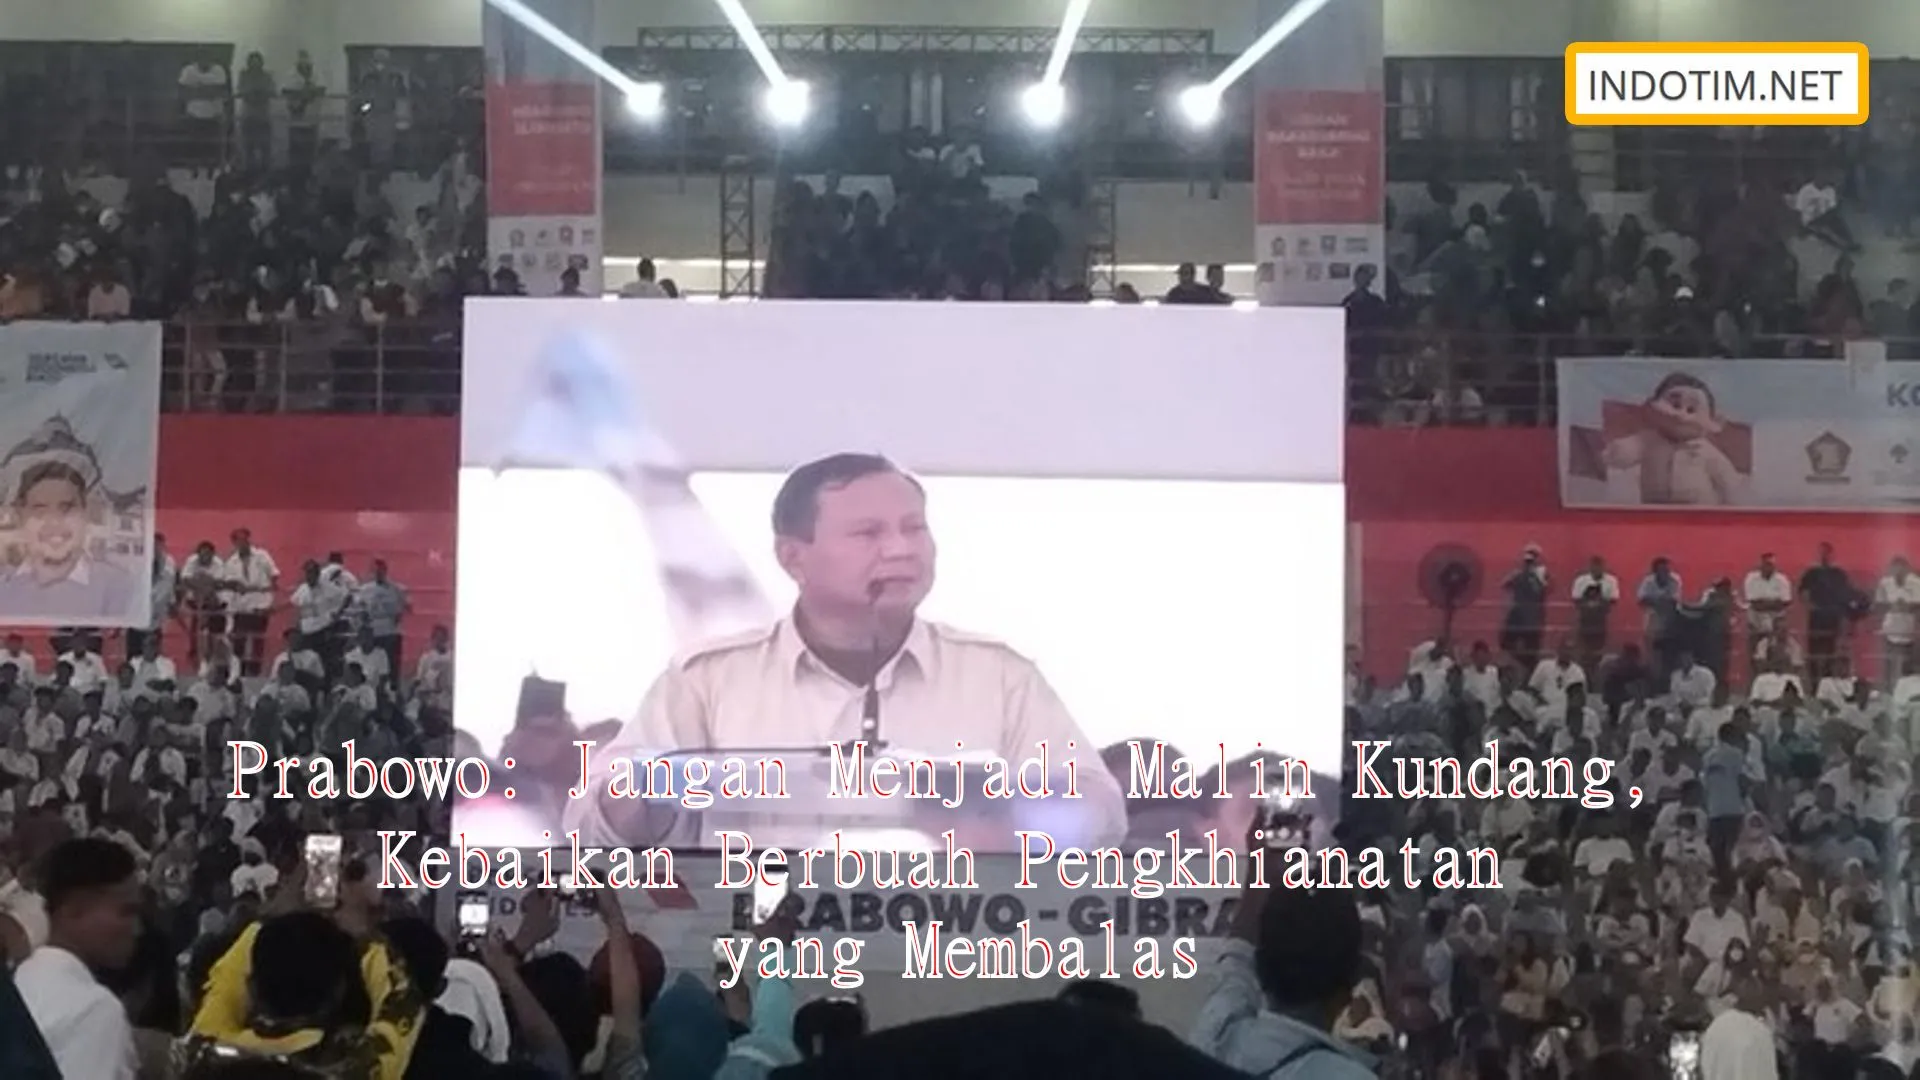 Prabowo: Jangan Menjadi Malin Kundang, Kebaikan Berbuah Pengkhianatan yang Membalas